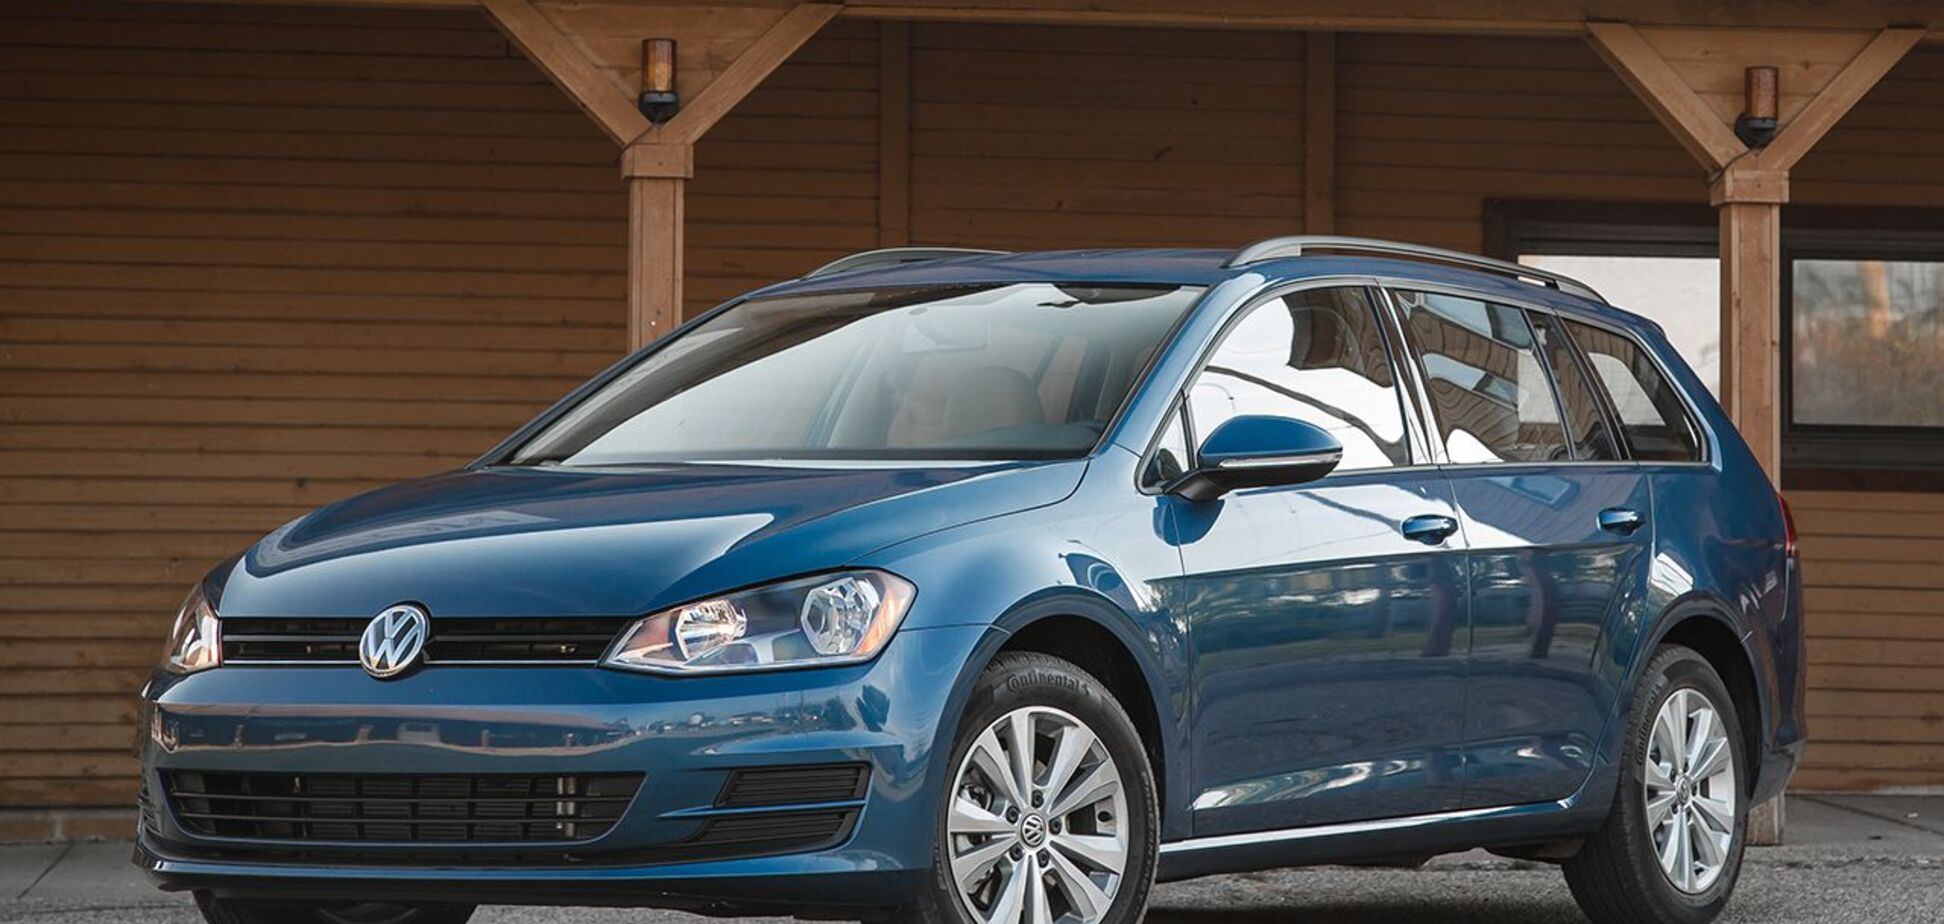 Счет на тысячи авто: в Украине Volkswagen попал в 'дизельный скандал'